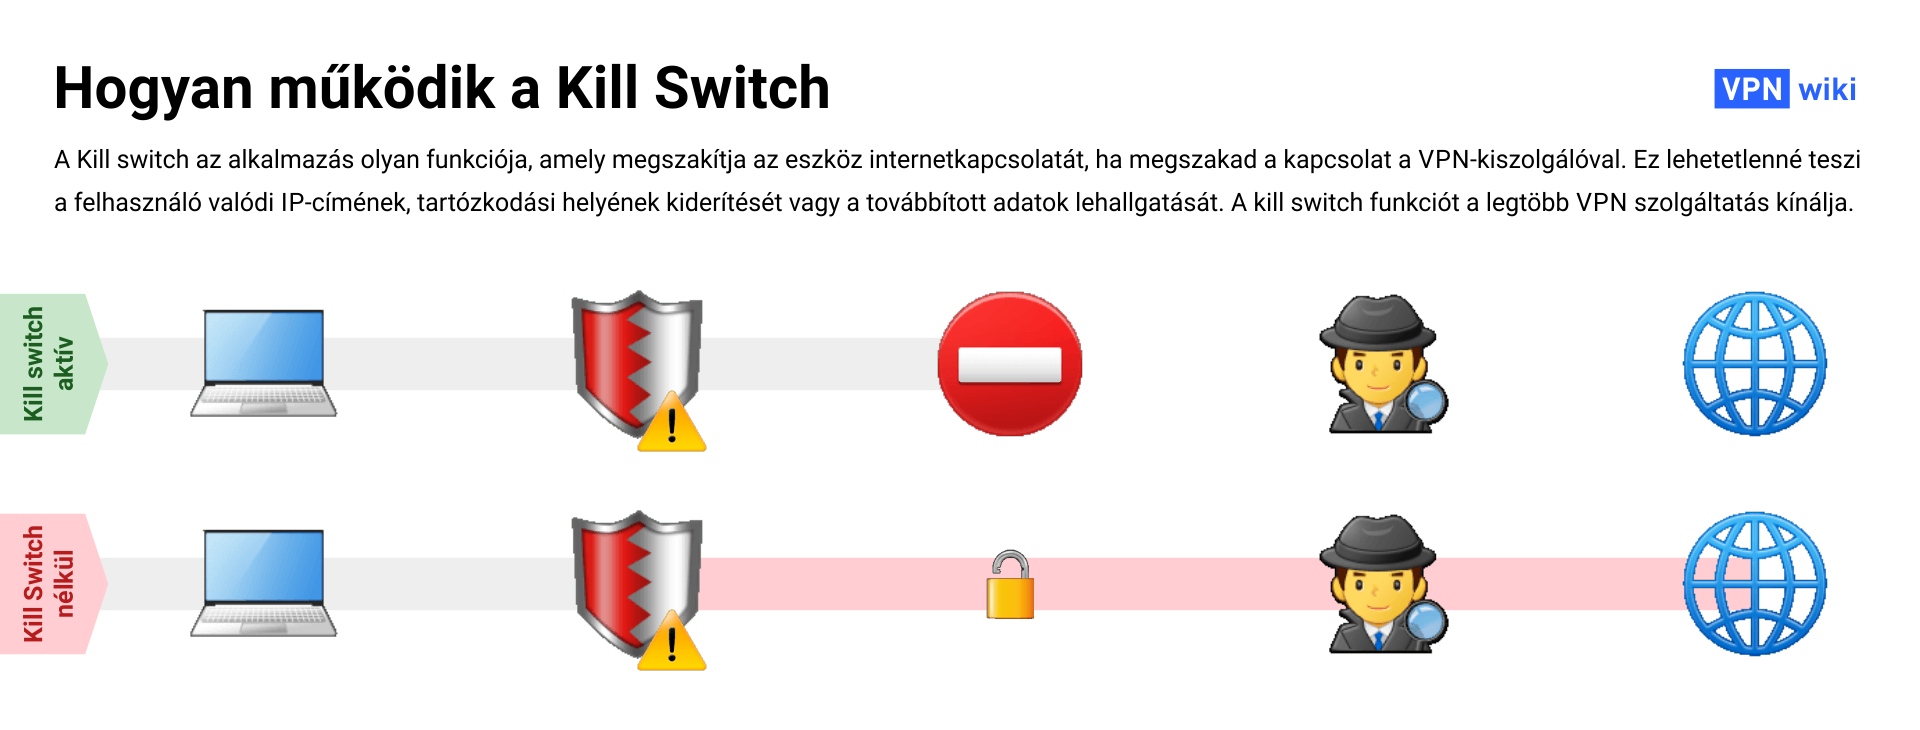 Mi az a VPN kill switch és hogyan működik?